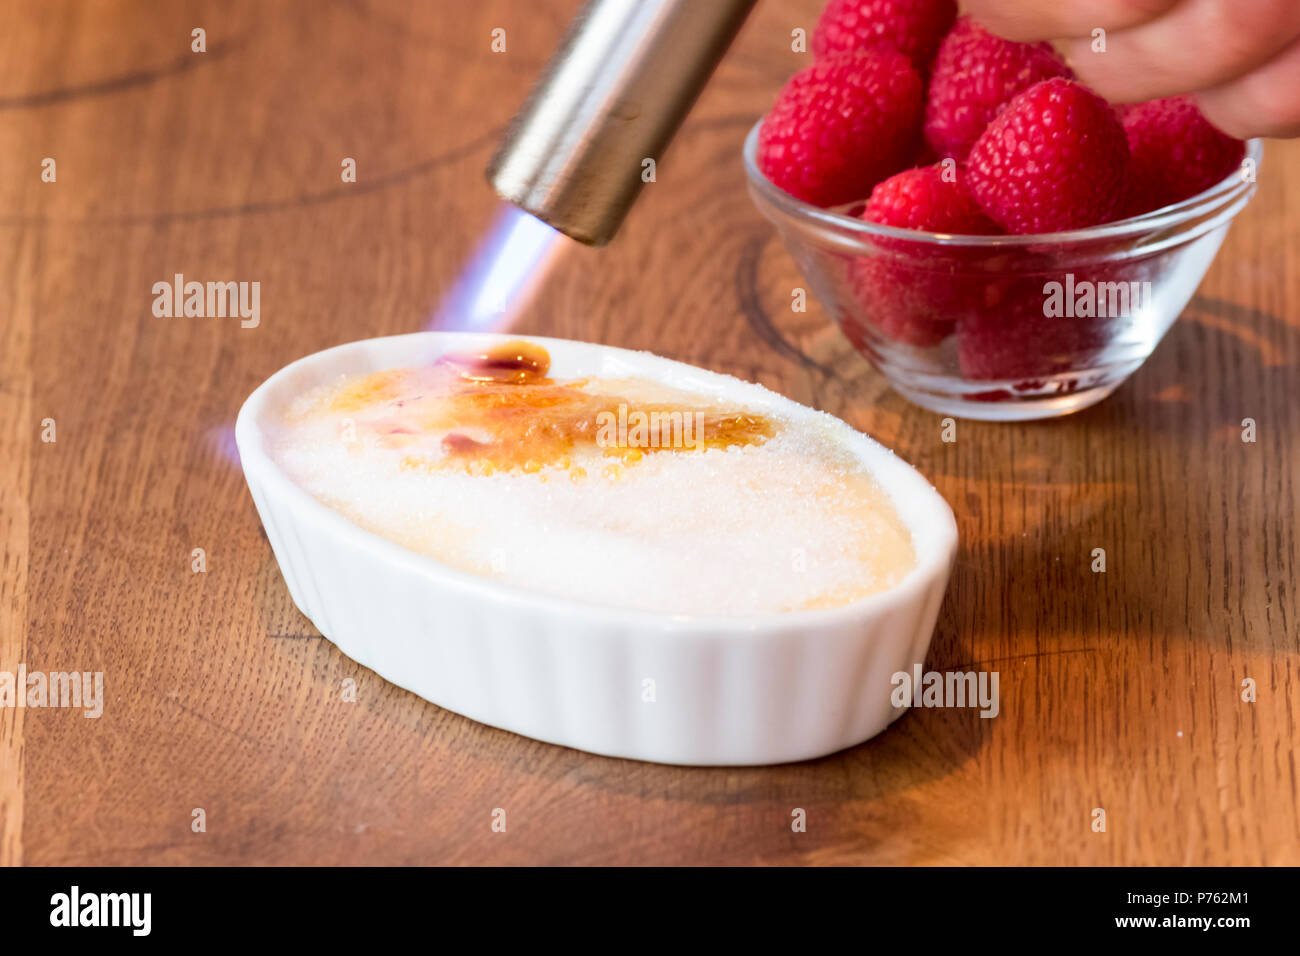 Crème catalane sur table en bois en blanc bol à fruits rouge Banque D'Images